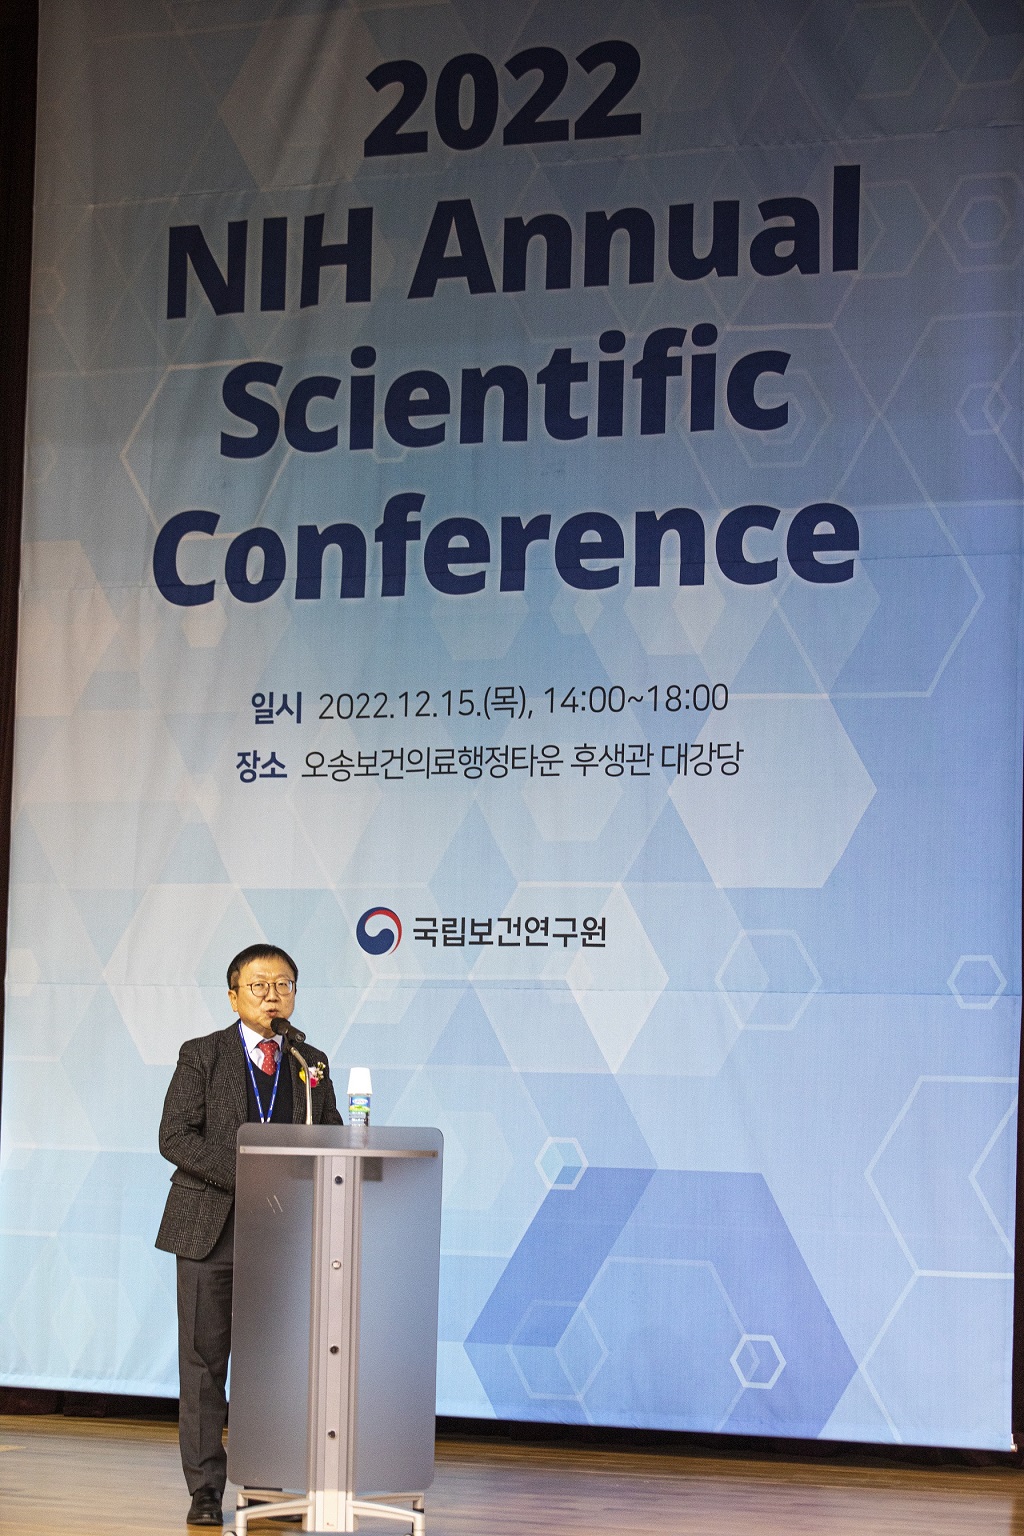 NIH 컨퍼런스에서 발표하는 발표자의 모습을 찍은 사진